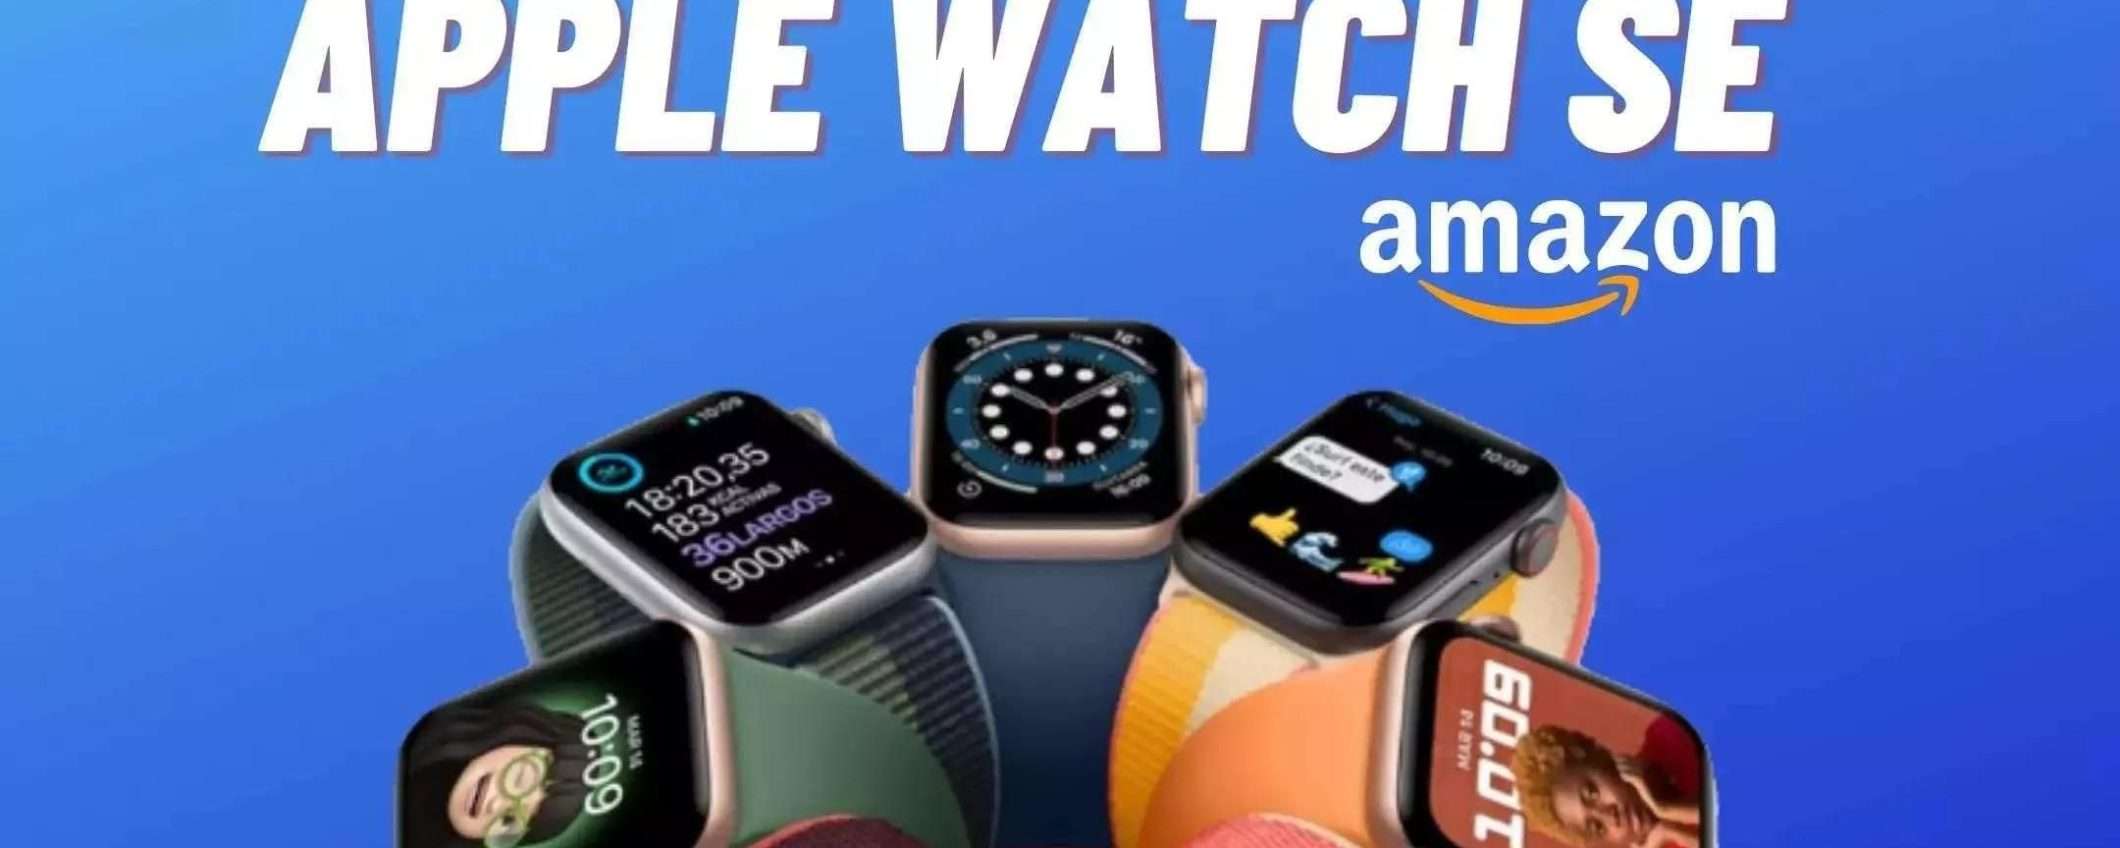 Apple Watch SE (2020) 44 mm al miglior prezzo: COMPRALO ORA